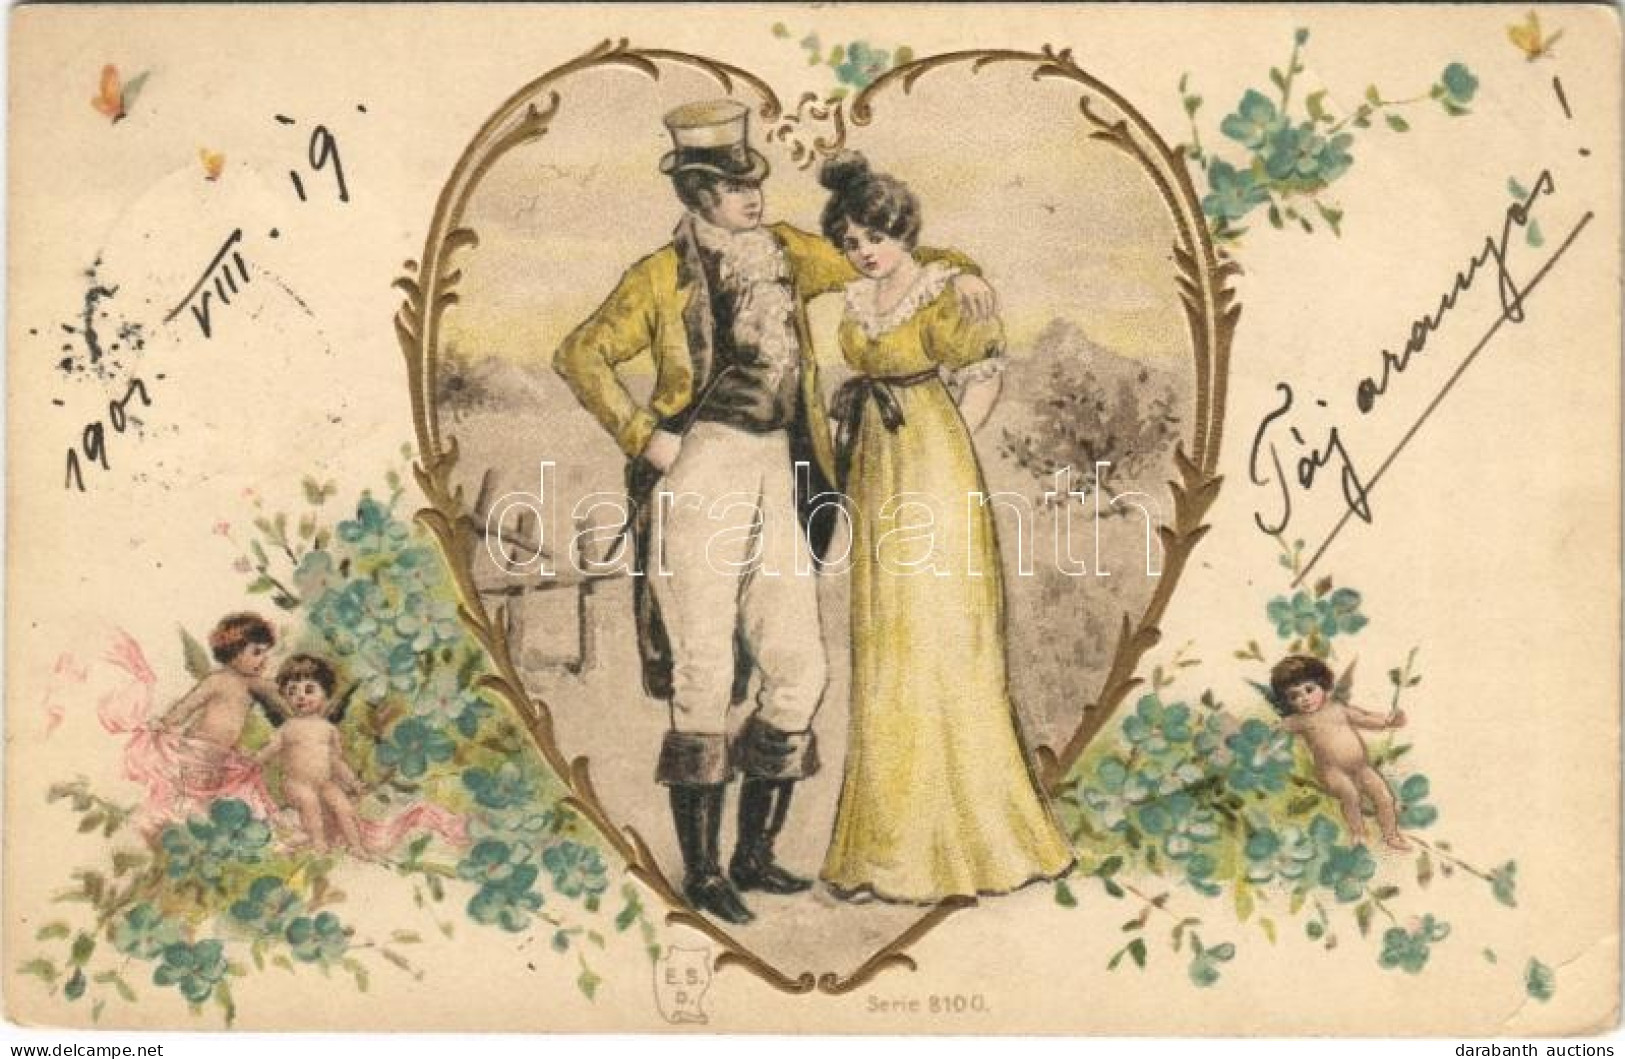 T2/T3 1901 Lady Art Postcard, Romantic Couple. E.S.D. Serie 8100. Art Nouveau, Floral, Litho (EB) - Non Classés